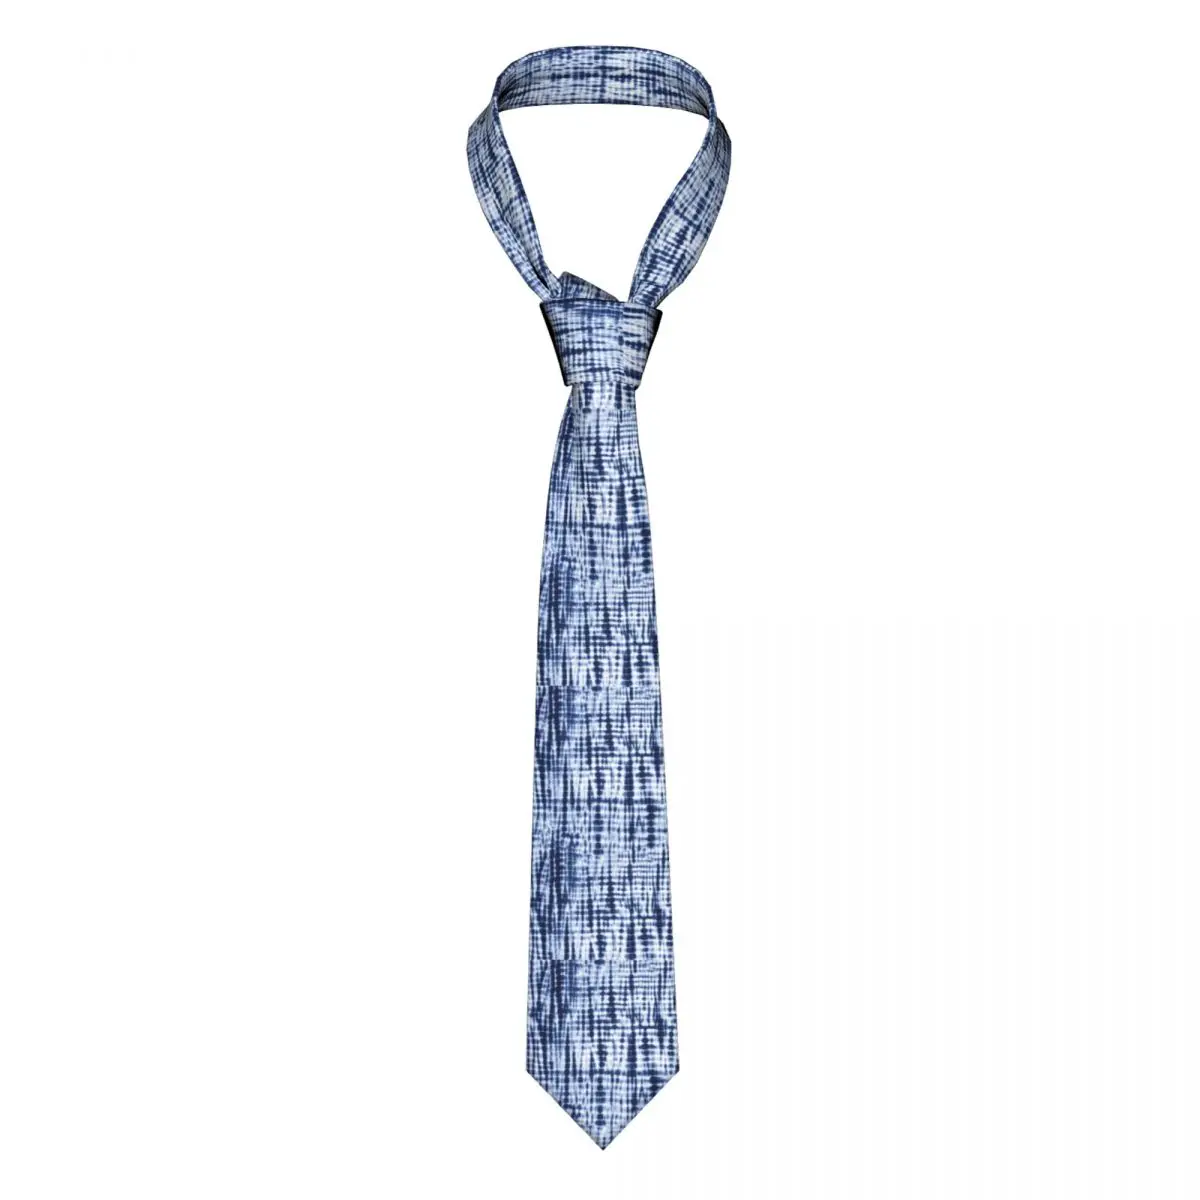 

Синий галстук-краска Узор Галстук художественный винтажный принт аксессуары для мужчин шеи галстуки шаблон блузка полиэстер шелк свадебный галстук